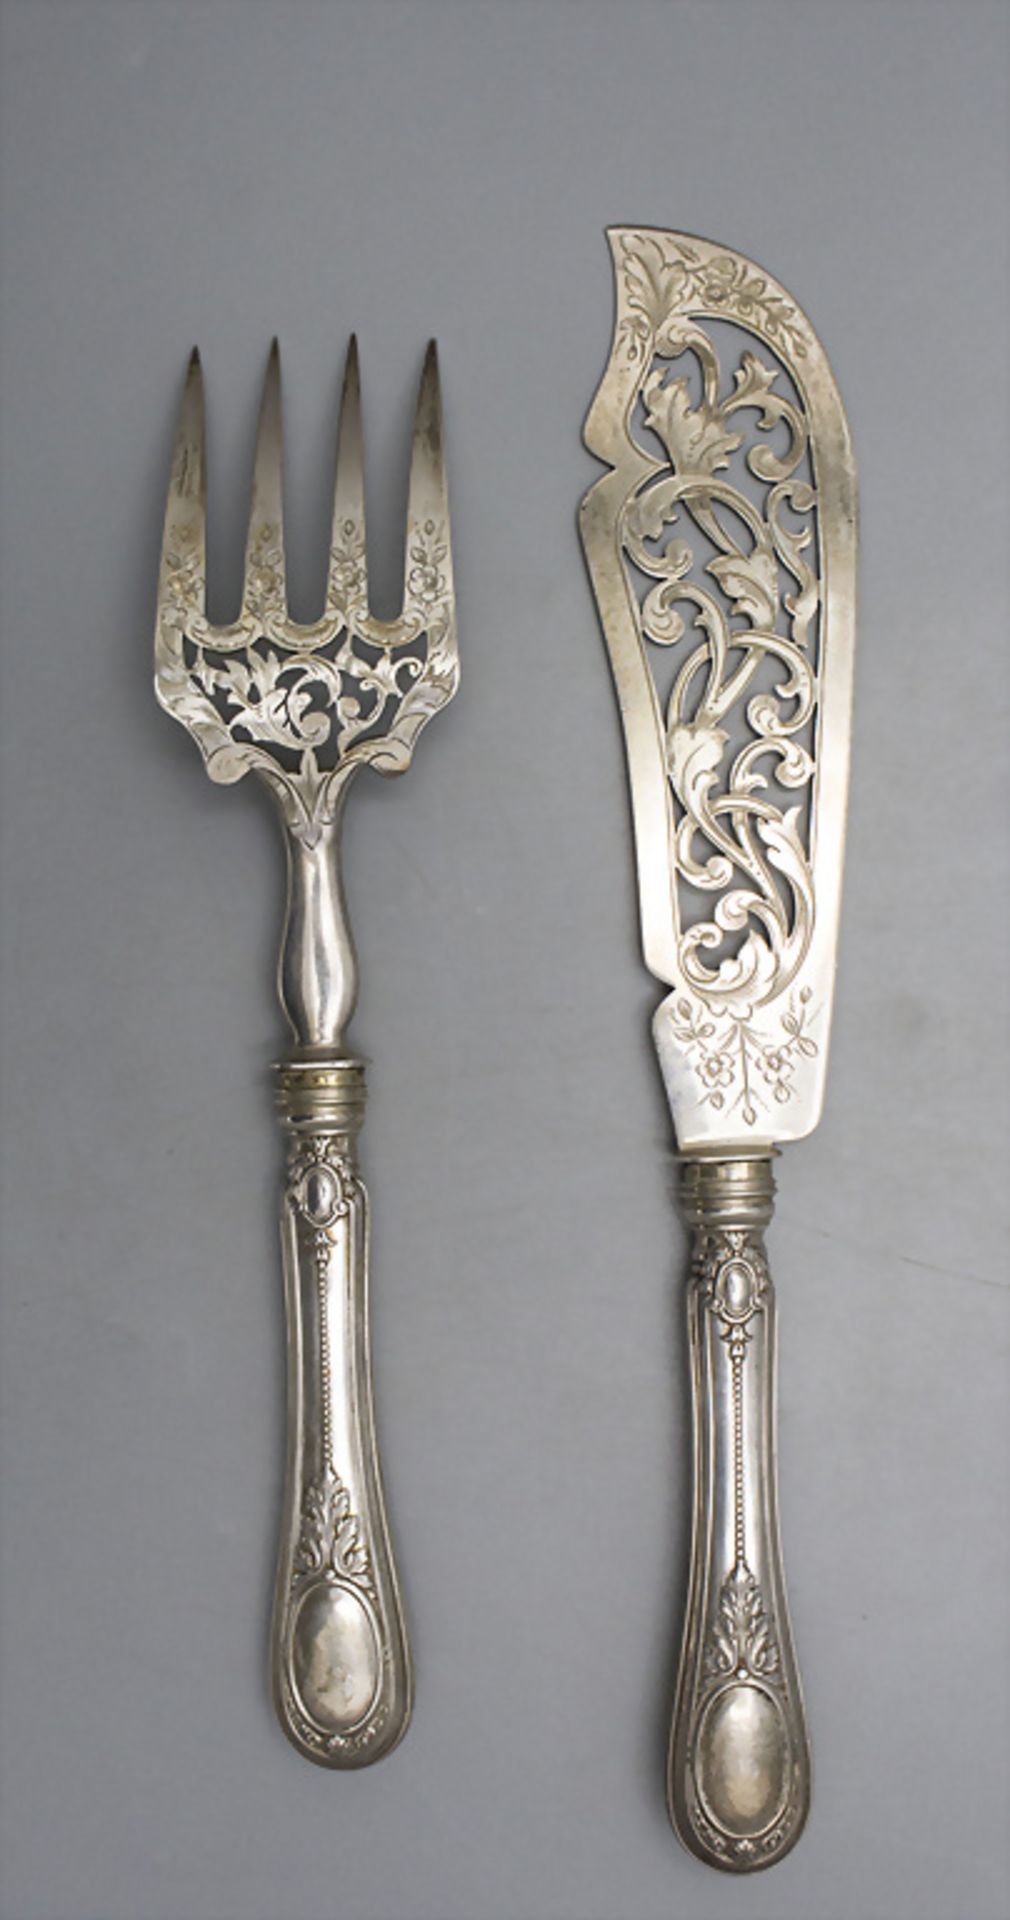 Fisch-Vorlegebesteck / A silver fish serving cutlery, Hènin & Cie., Paris, nach 1896 - Bild 4 aus 5